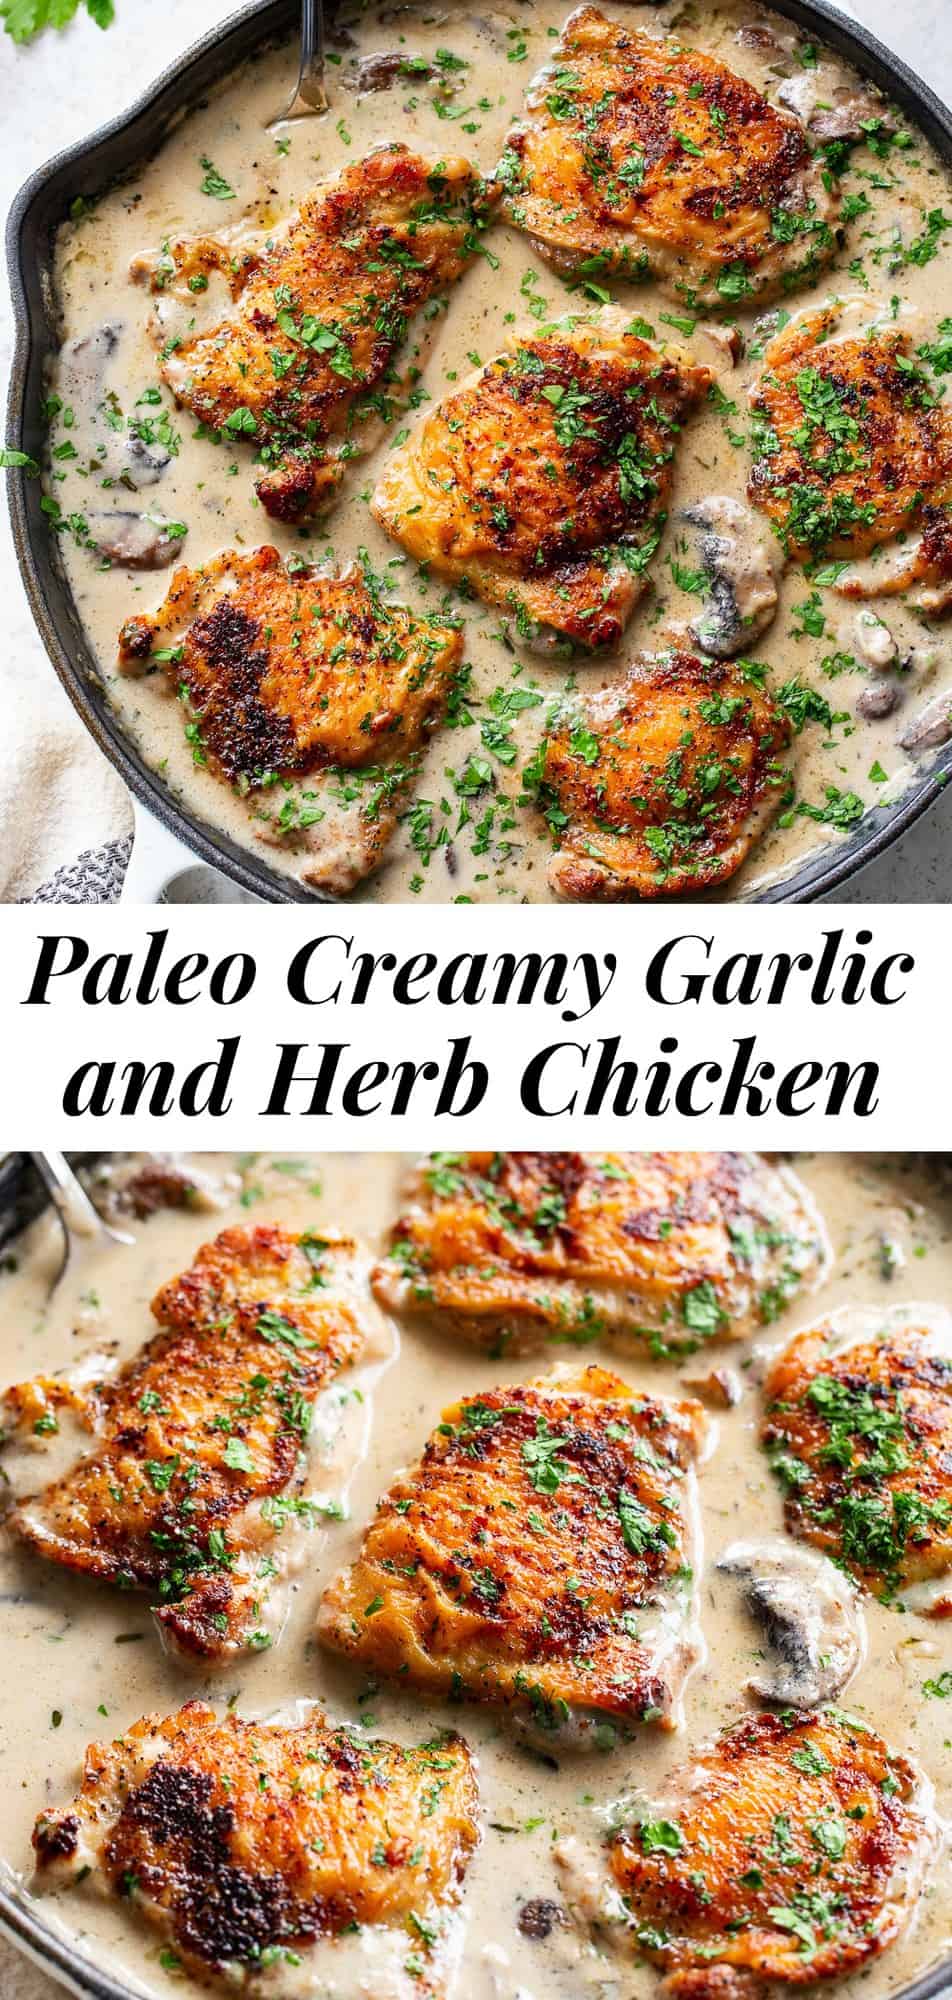 https://www.paleorunningmomma.com/wp-content/uploads/2020/12/creamy-garlic-herb-chicken-.jpg